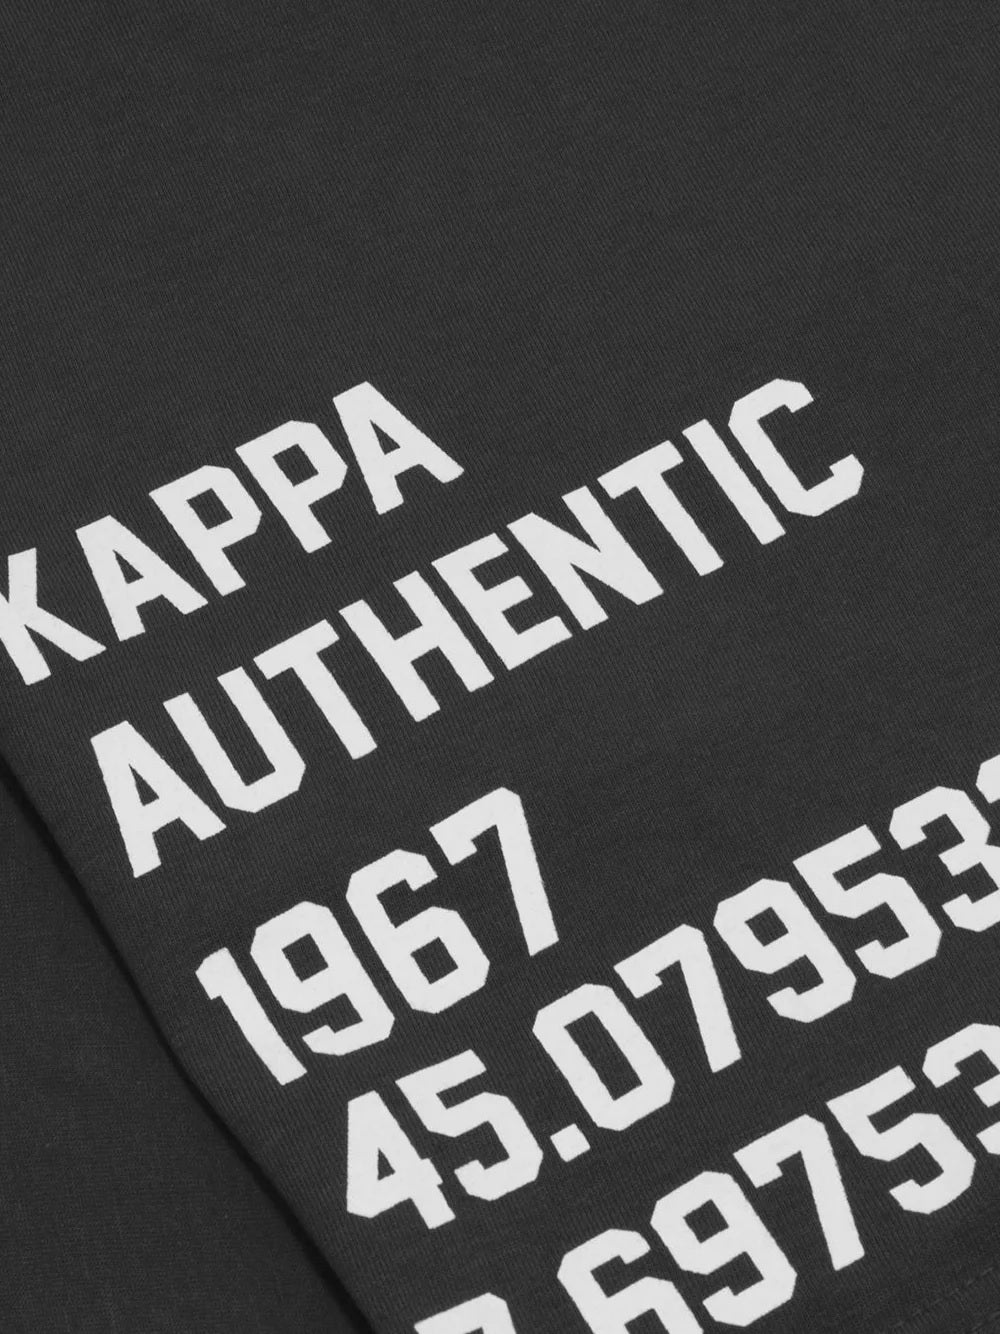 T-shirt KAPPA banda 222 modello 304ICL0. Banda jacquard con ripetizione di Omini lettering Kappa stampato.